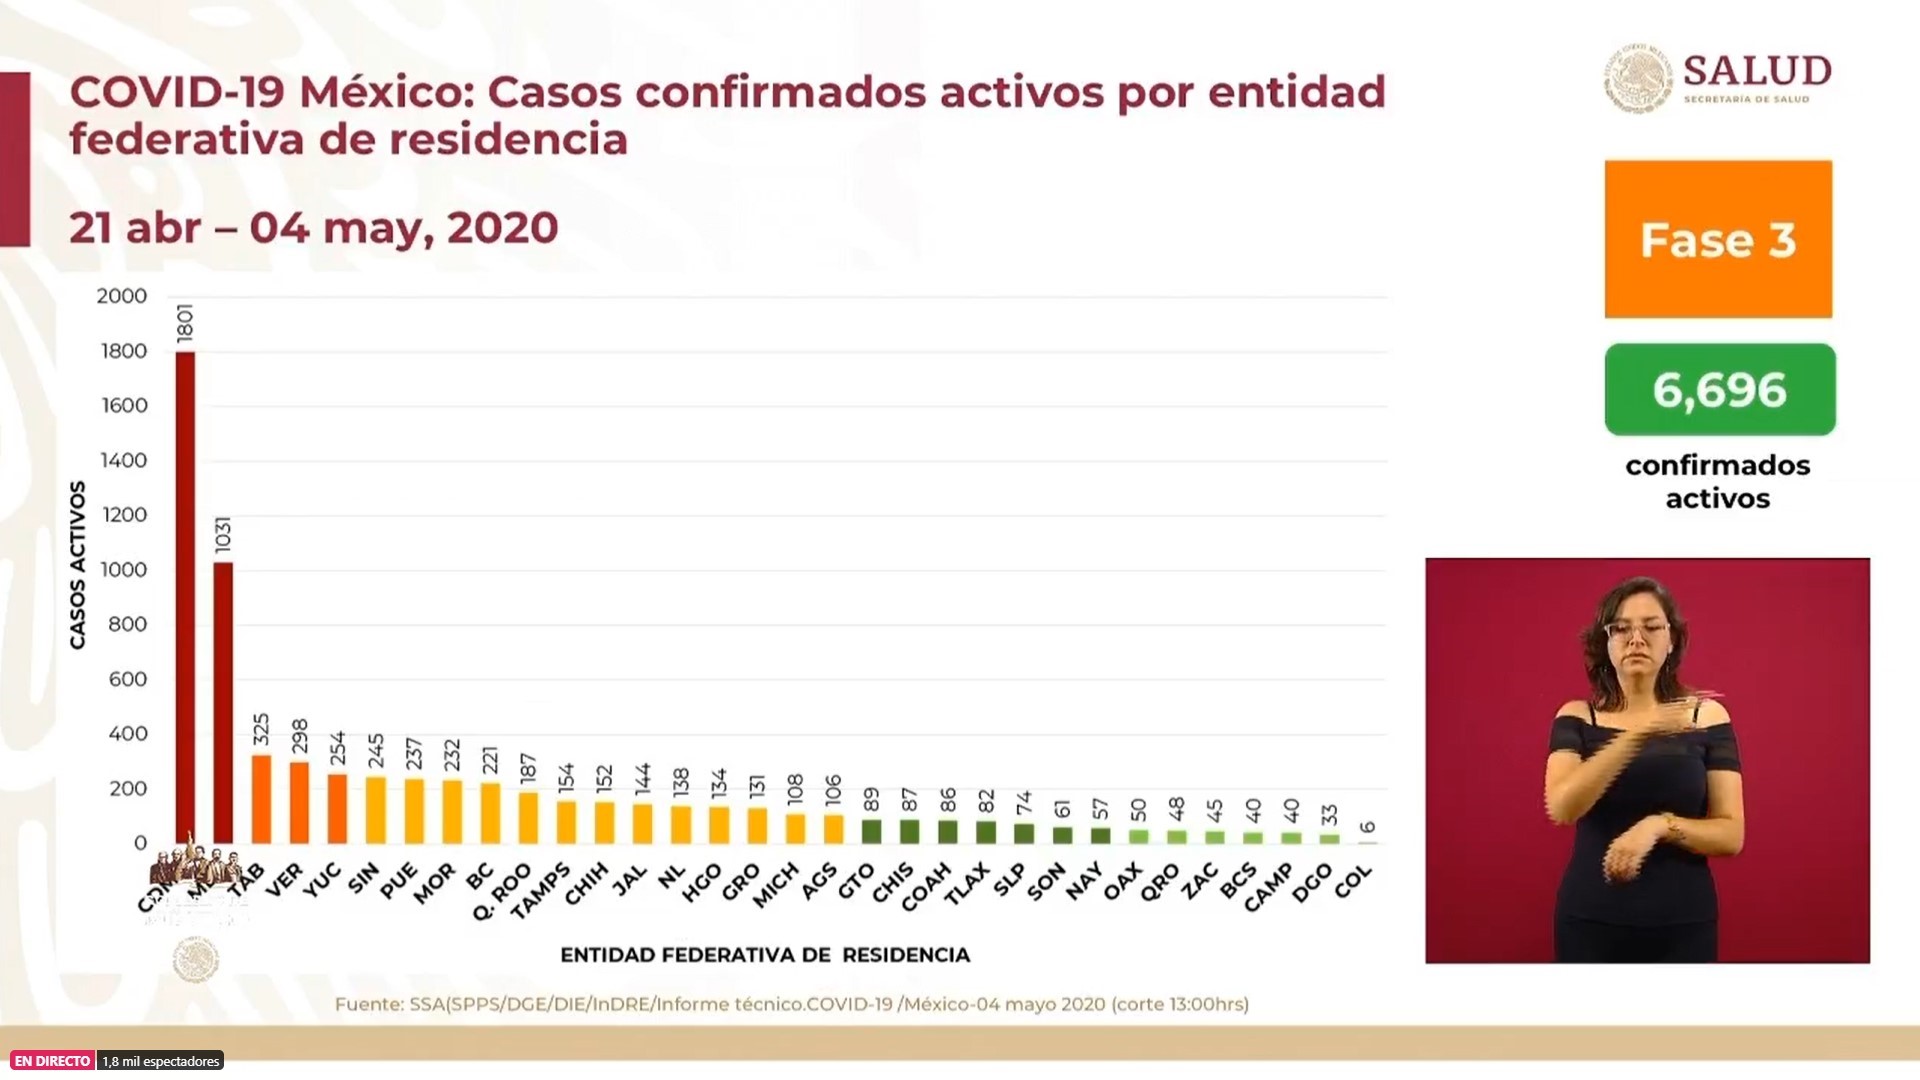 La Ciudad de México, el Estado de México, Tabasco y Veracruz presentan el mayor número de casos activos (Foto: SSa)